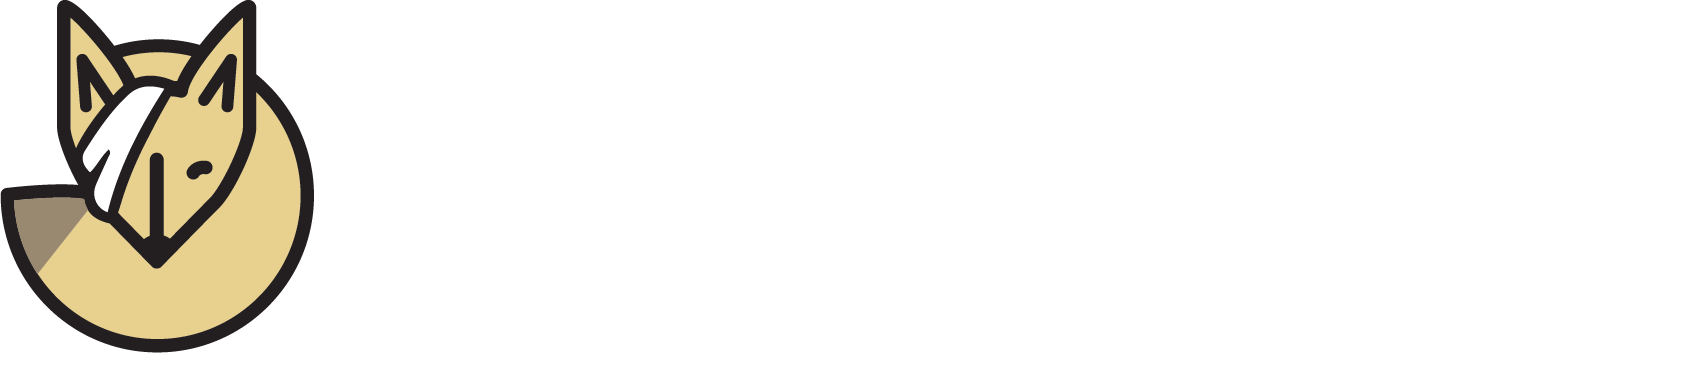 CALM Wildlife Rehabilitation Center logo